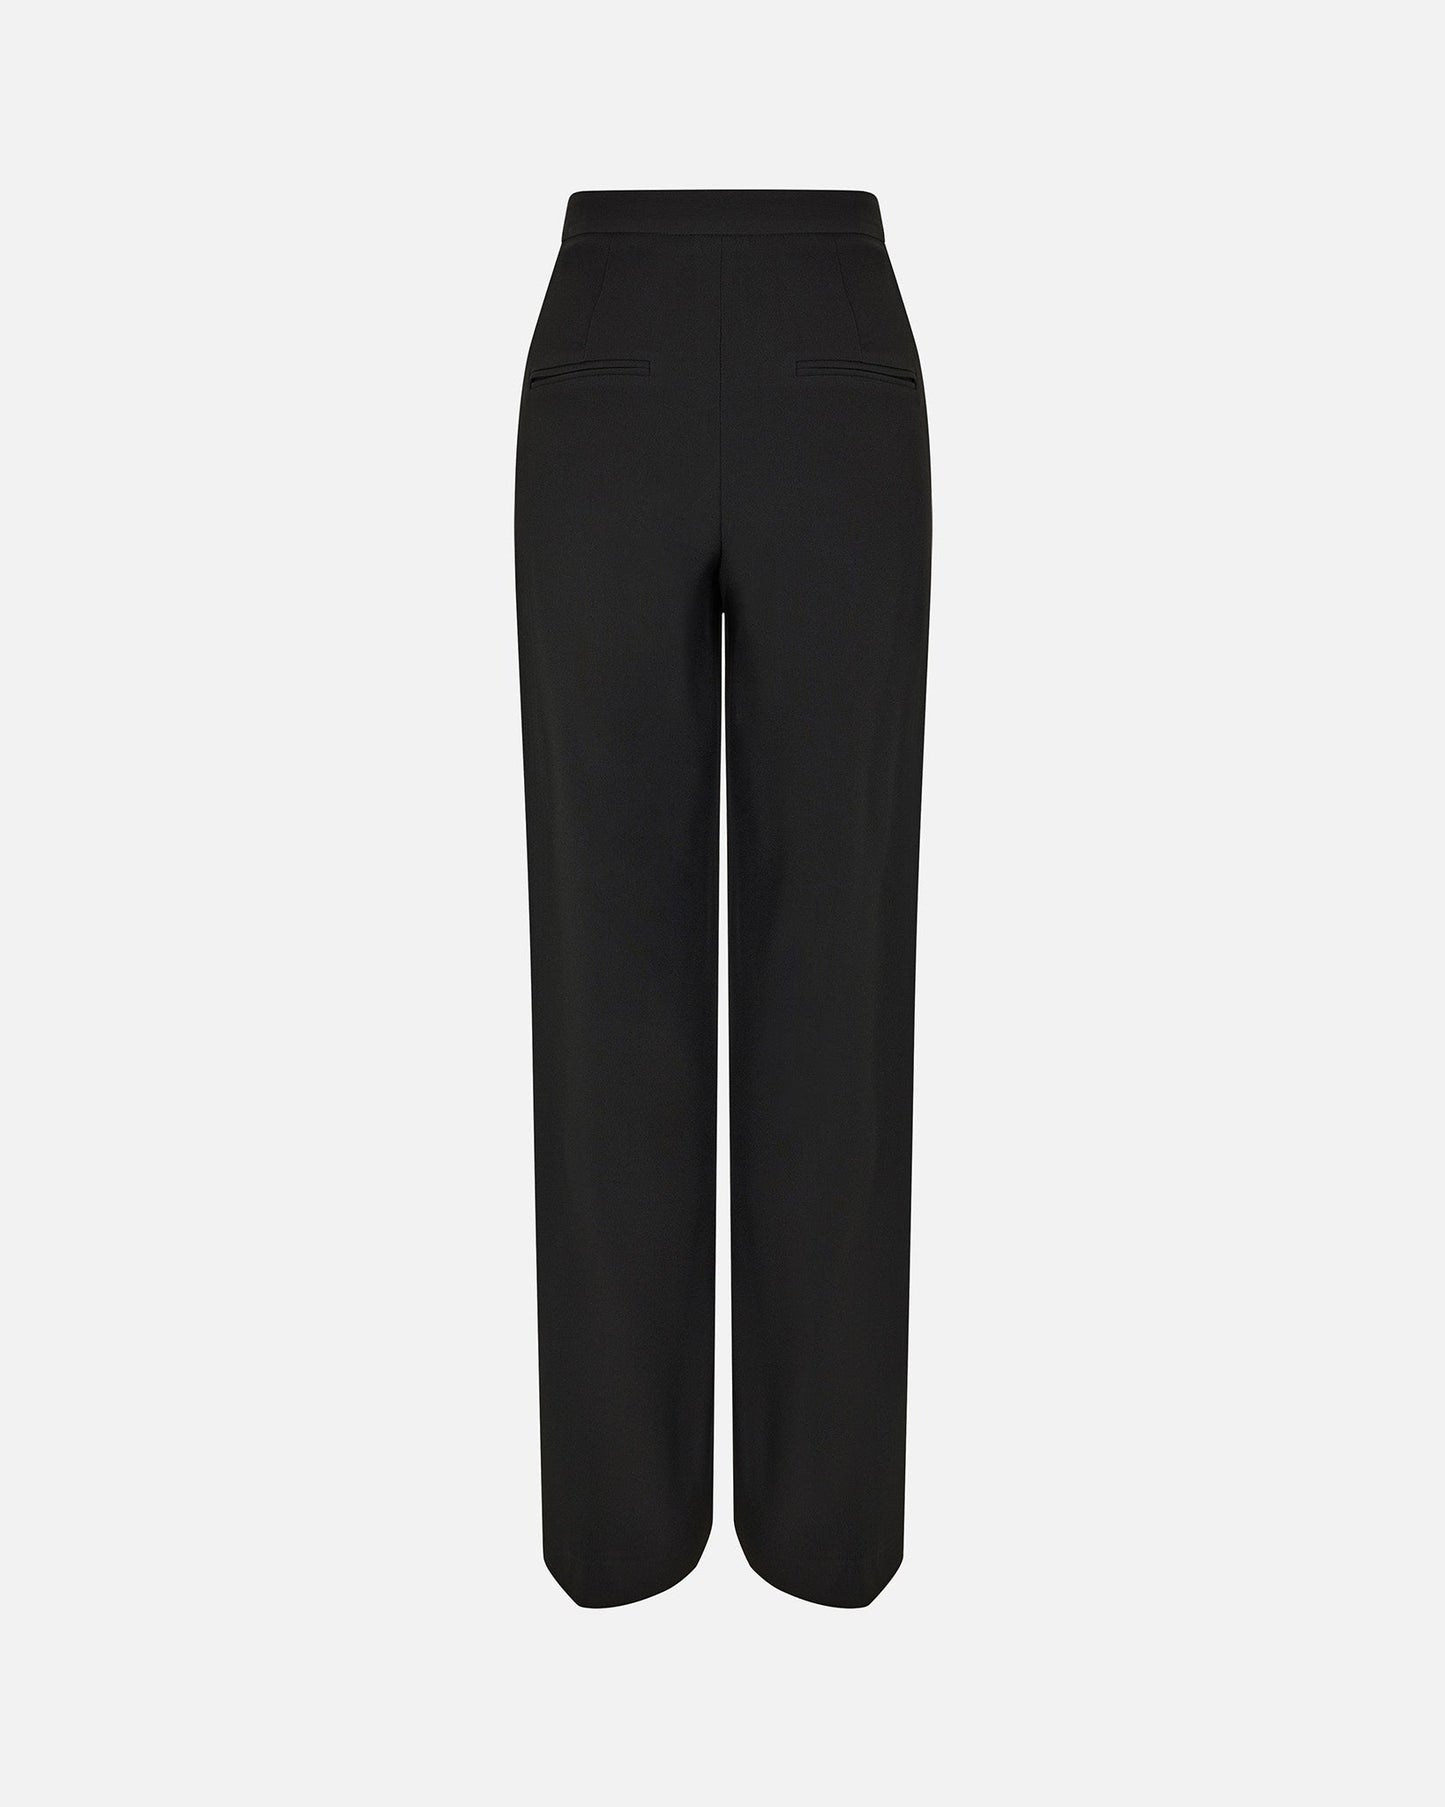 Trousers FOUQUET - PALLAS PARIS -  - 22H, BLACK, FOUQUET, SATIN MAT, SEASONAL, TROUSERS